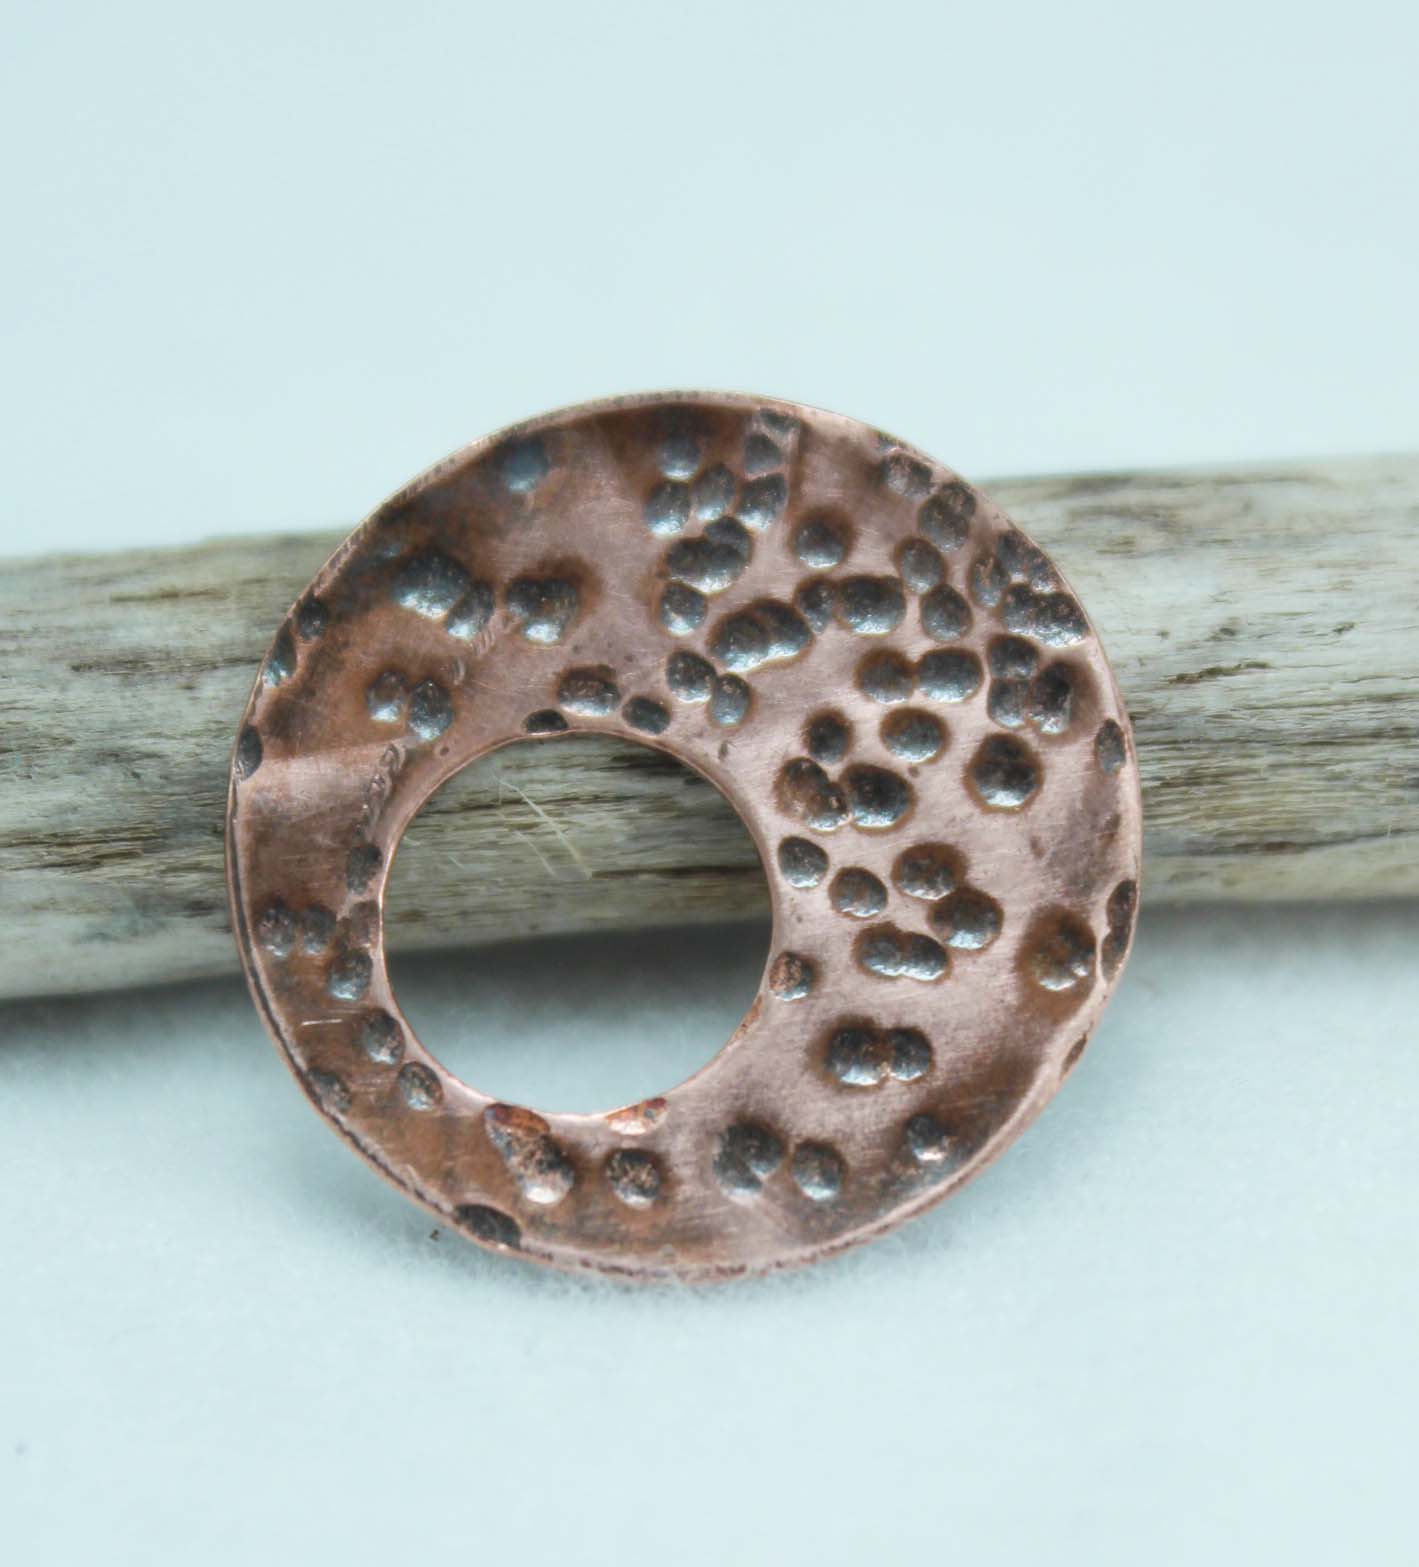 Textured copper disc, textured using a small ball peen hammer